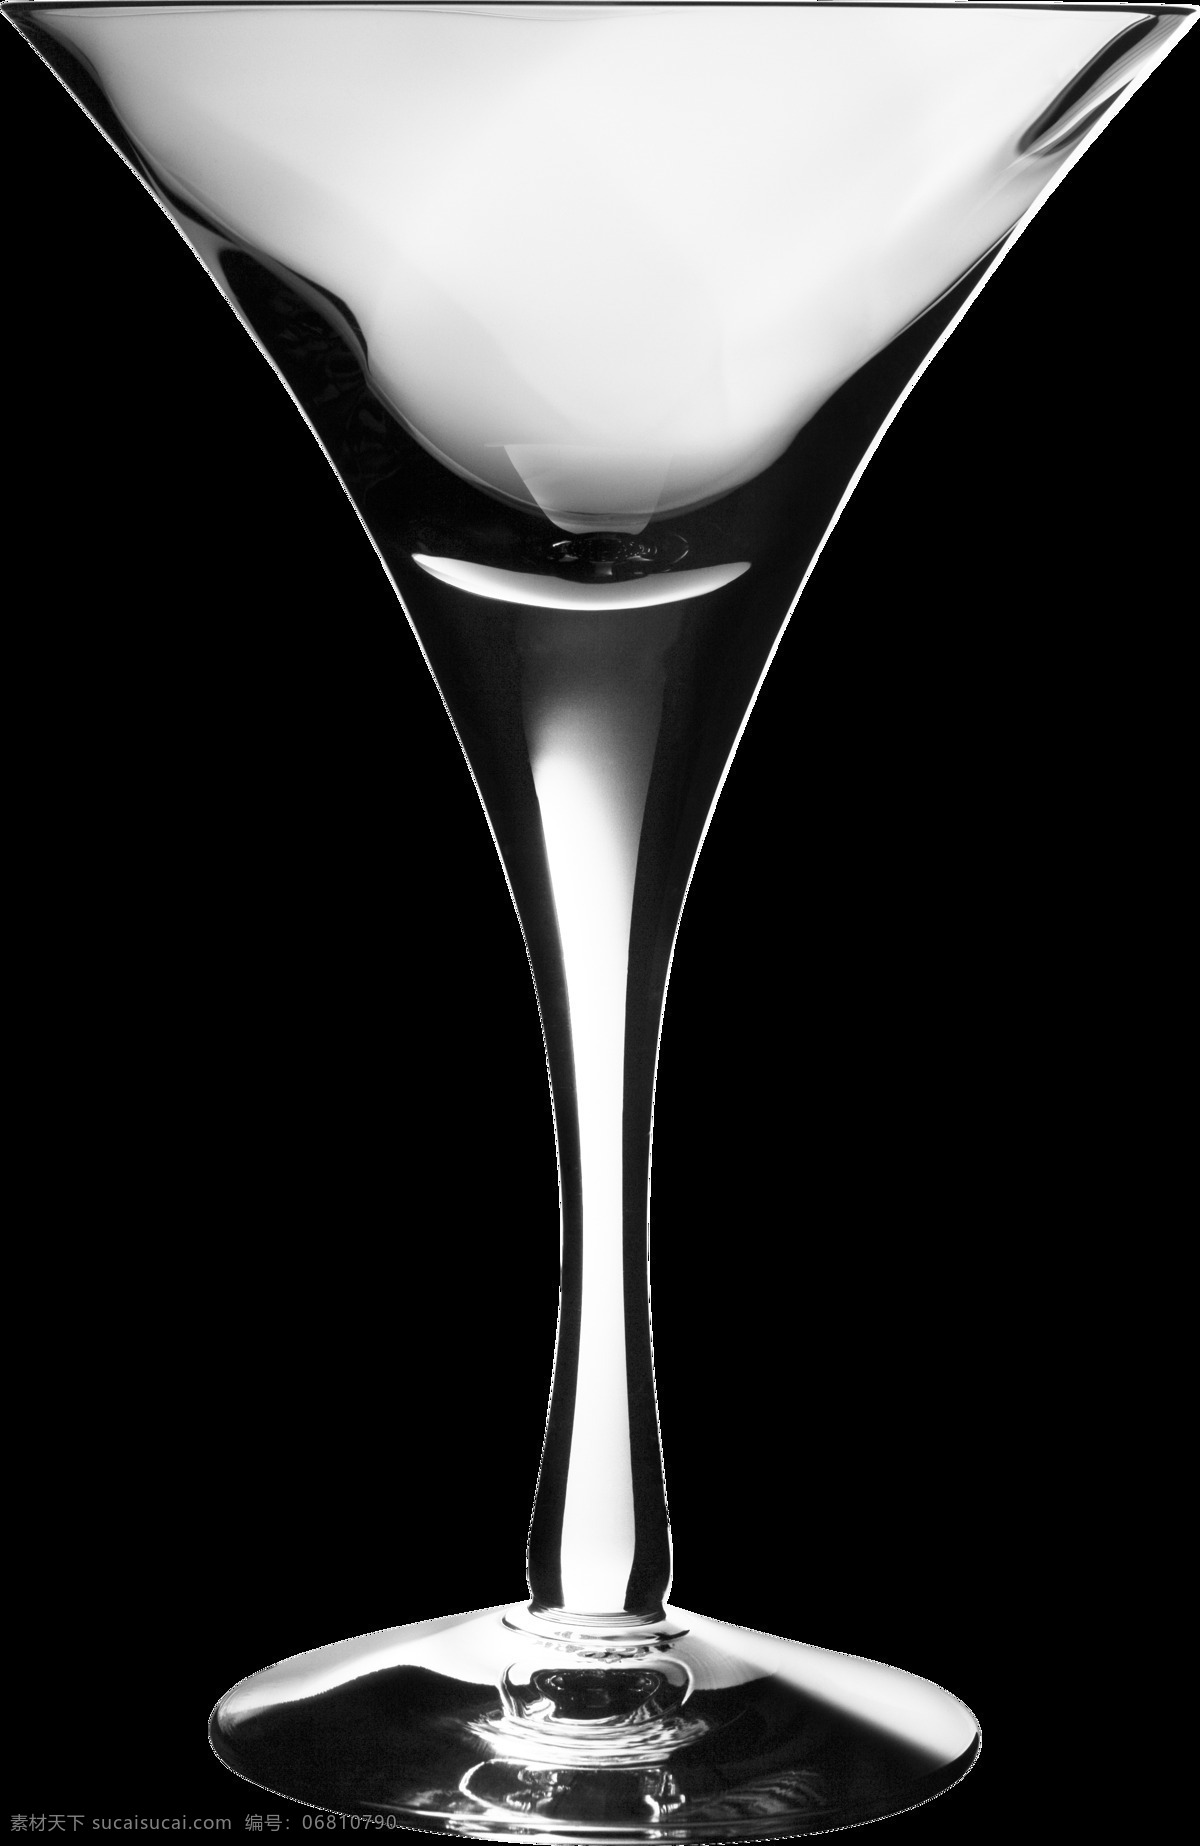 透明 玻璃杯 图 免 抠 层 水晶玻璃杯 玻璃杯素材 透明玻璃杯 玻璃杯图片 唯美 高档 高脚杯红酒图 片 小高脚杯 鸡尾酒杯 高脚杯酒 大高脚杯 葡萄酒杯 红酒杯子